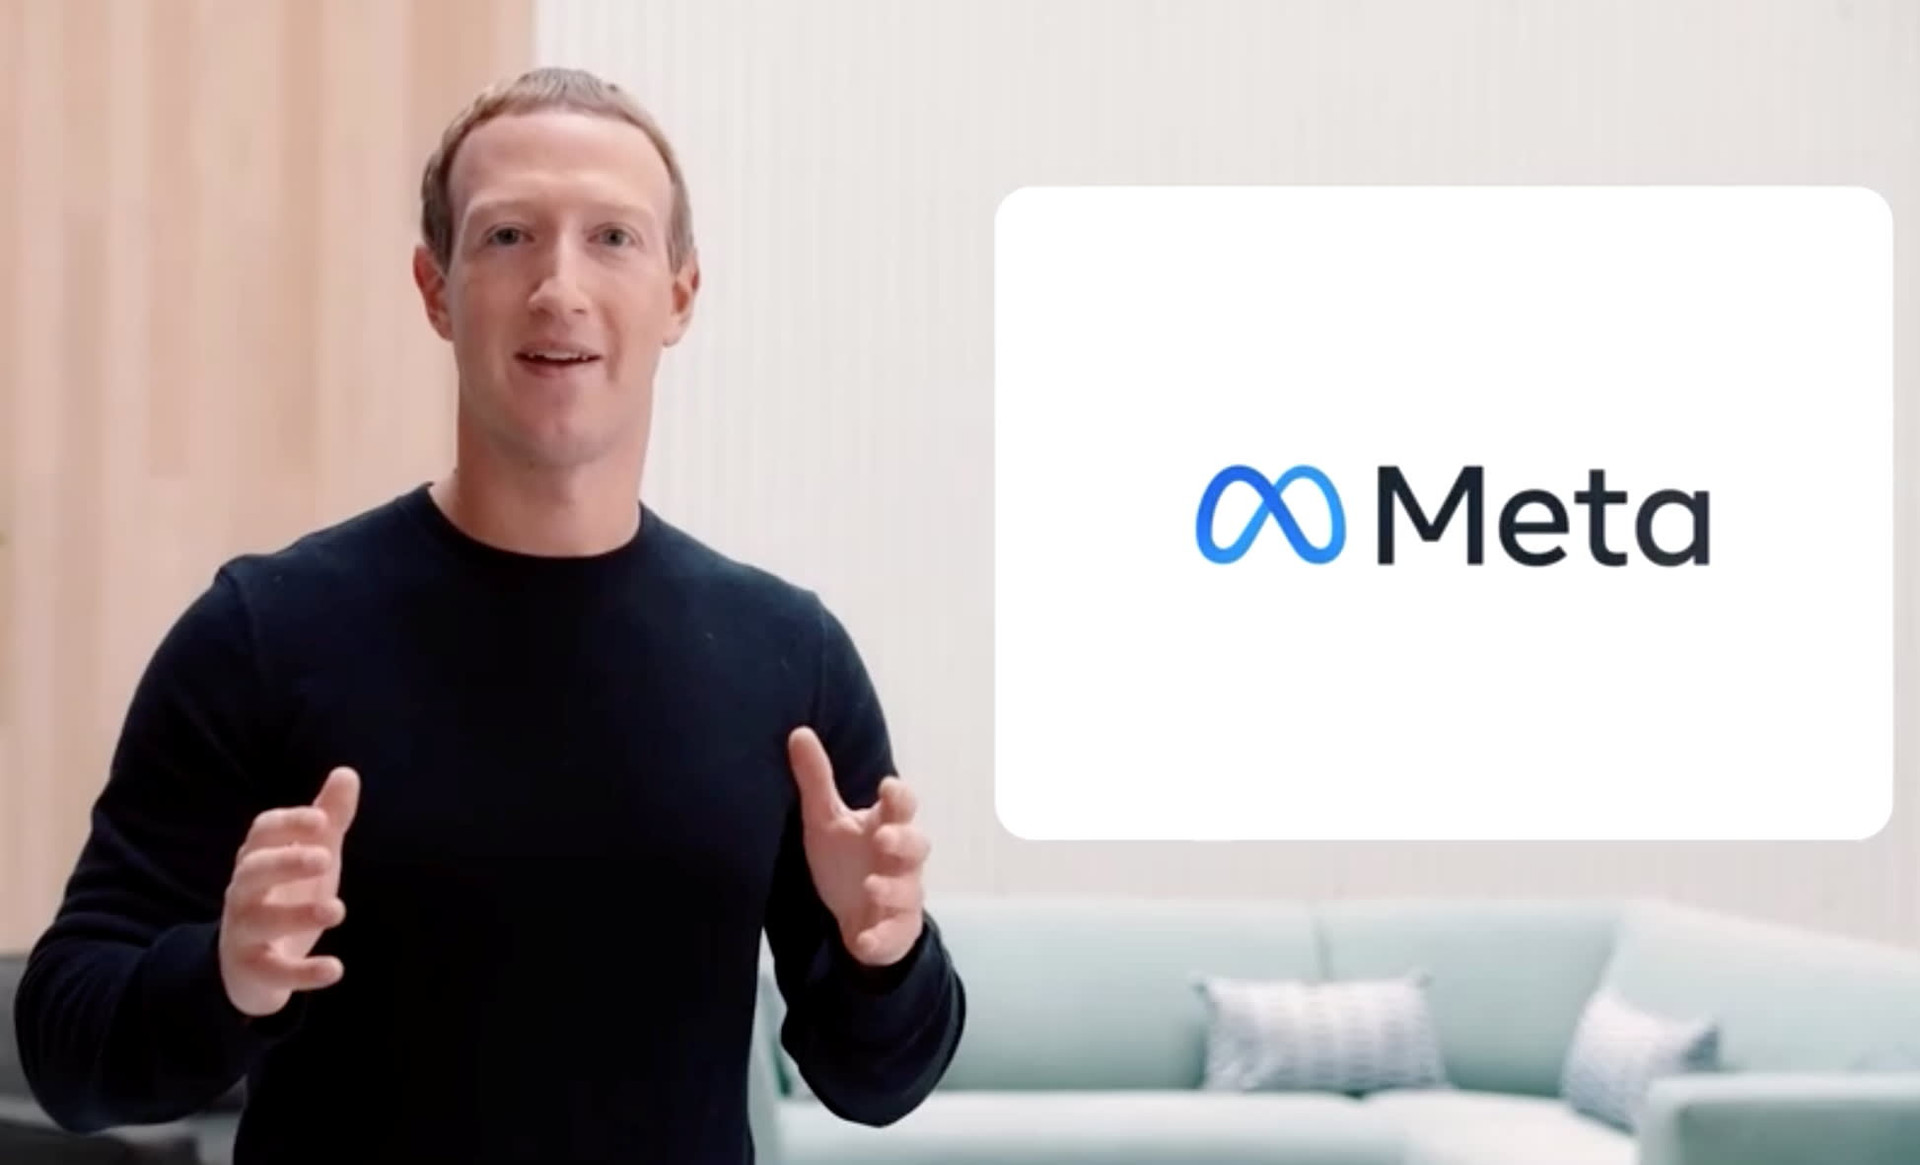 Việc đổi tên thương hiệu của Facebook thành Meta nhằm báo hiệu một hướng đi mới, nhưng các vấn đề cũ vẫn còn. Ảnh: CNBC.